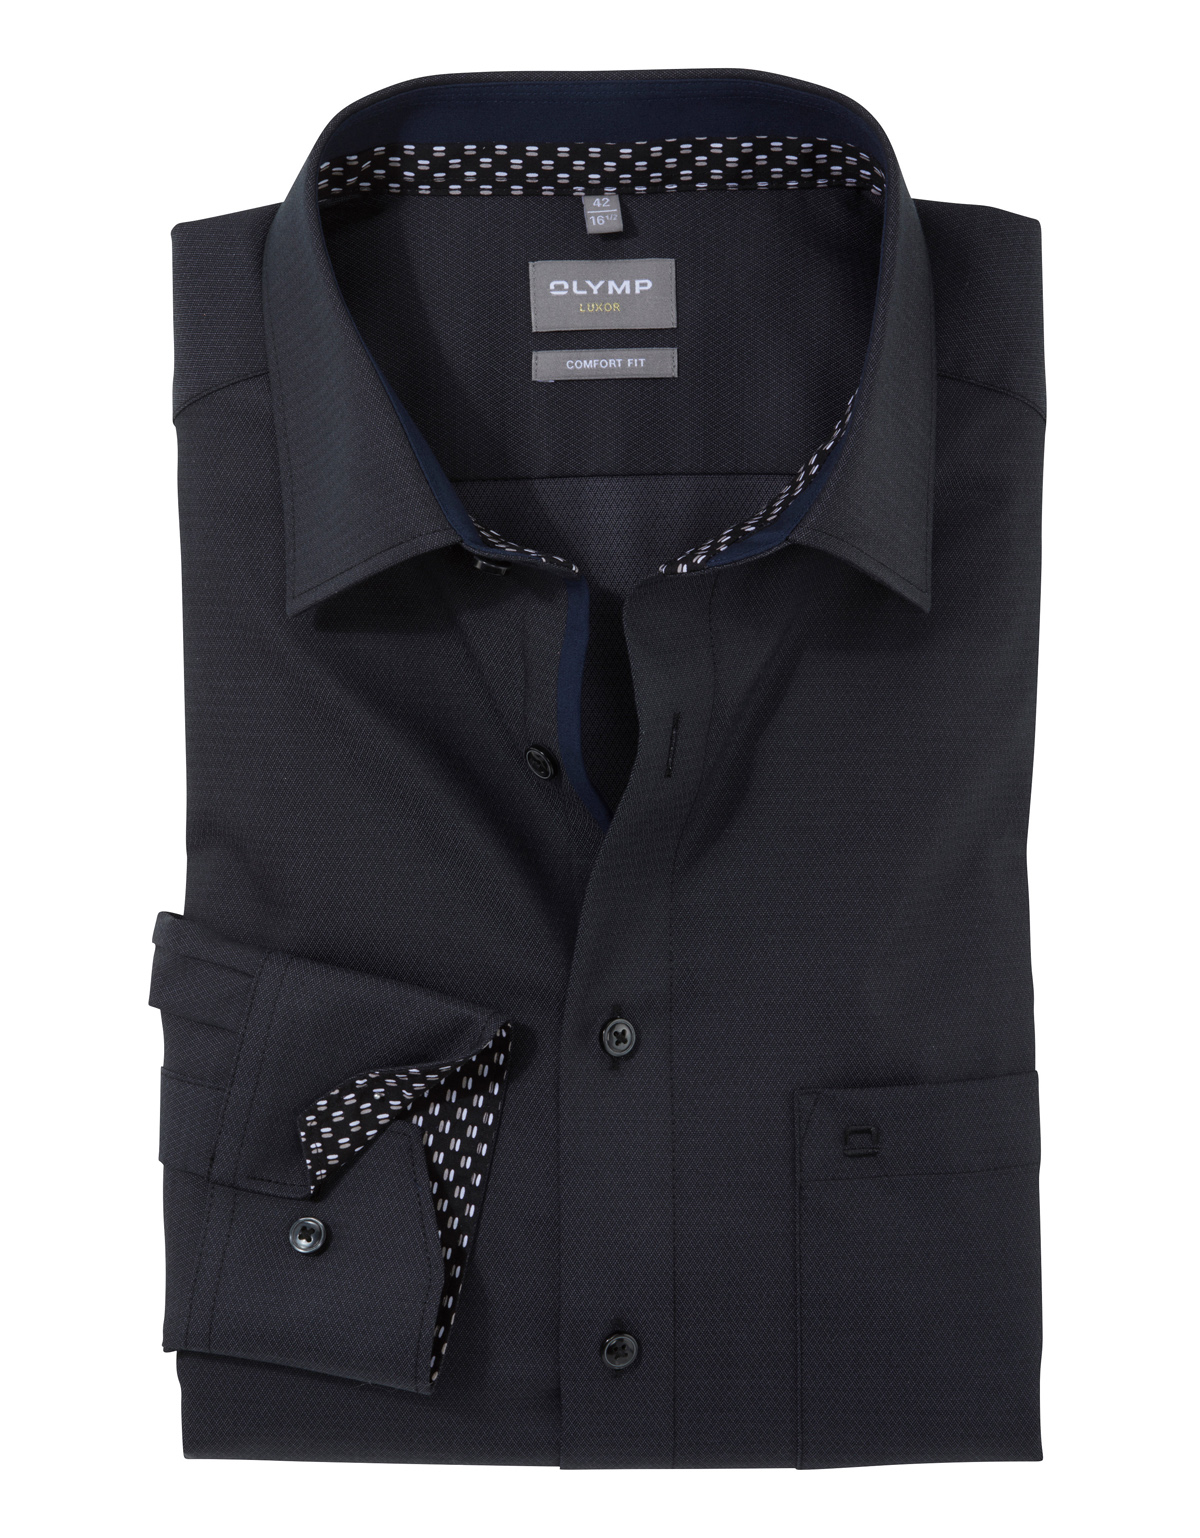 Рубашка чёрная мужская OLYMP Luxor, прямой крой, фактурная ткань[ТЕМНО-СЕРЫЙ]